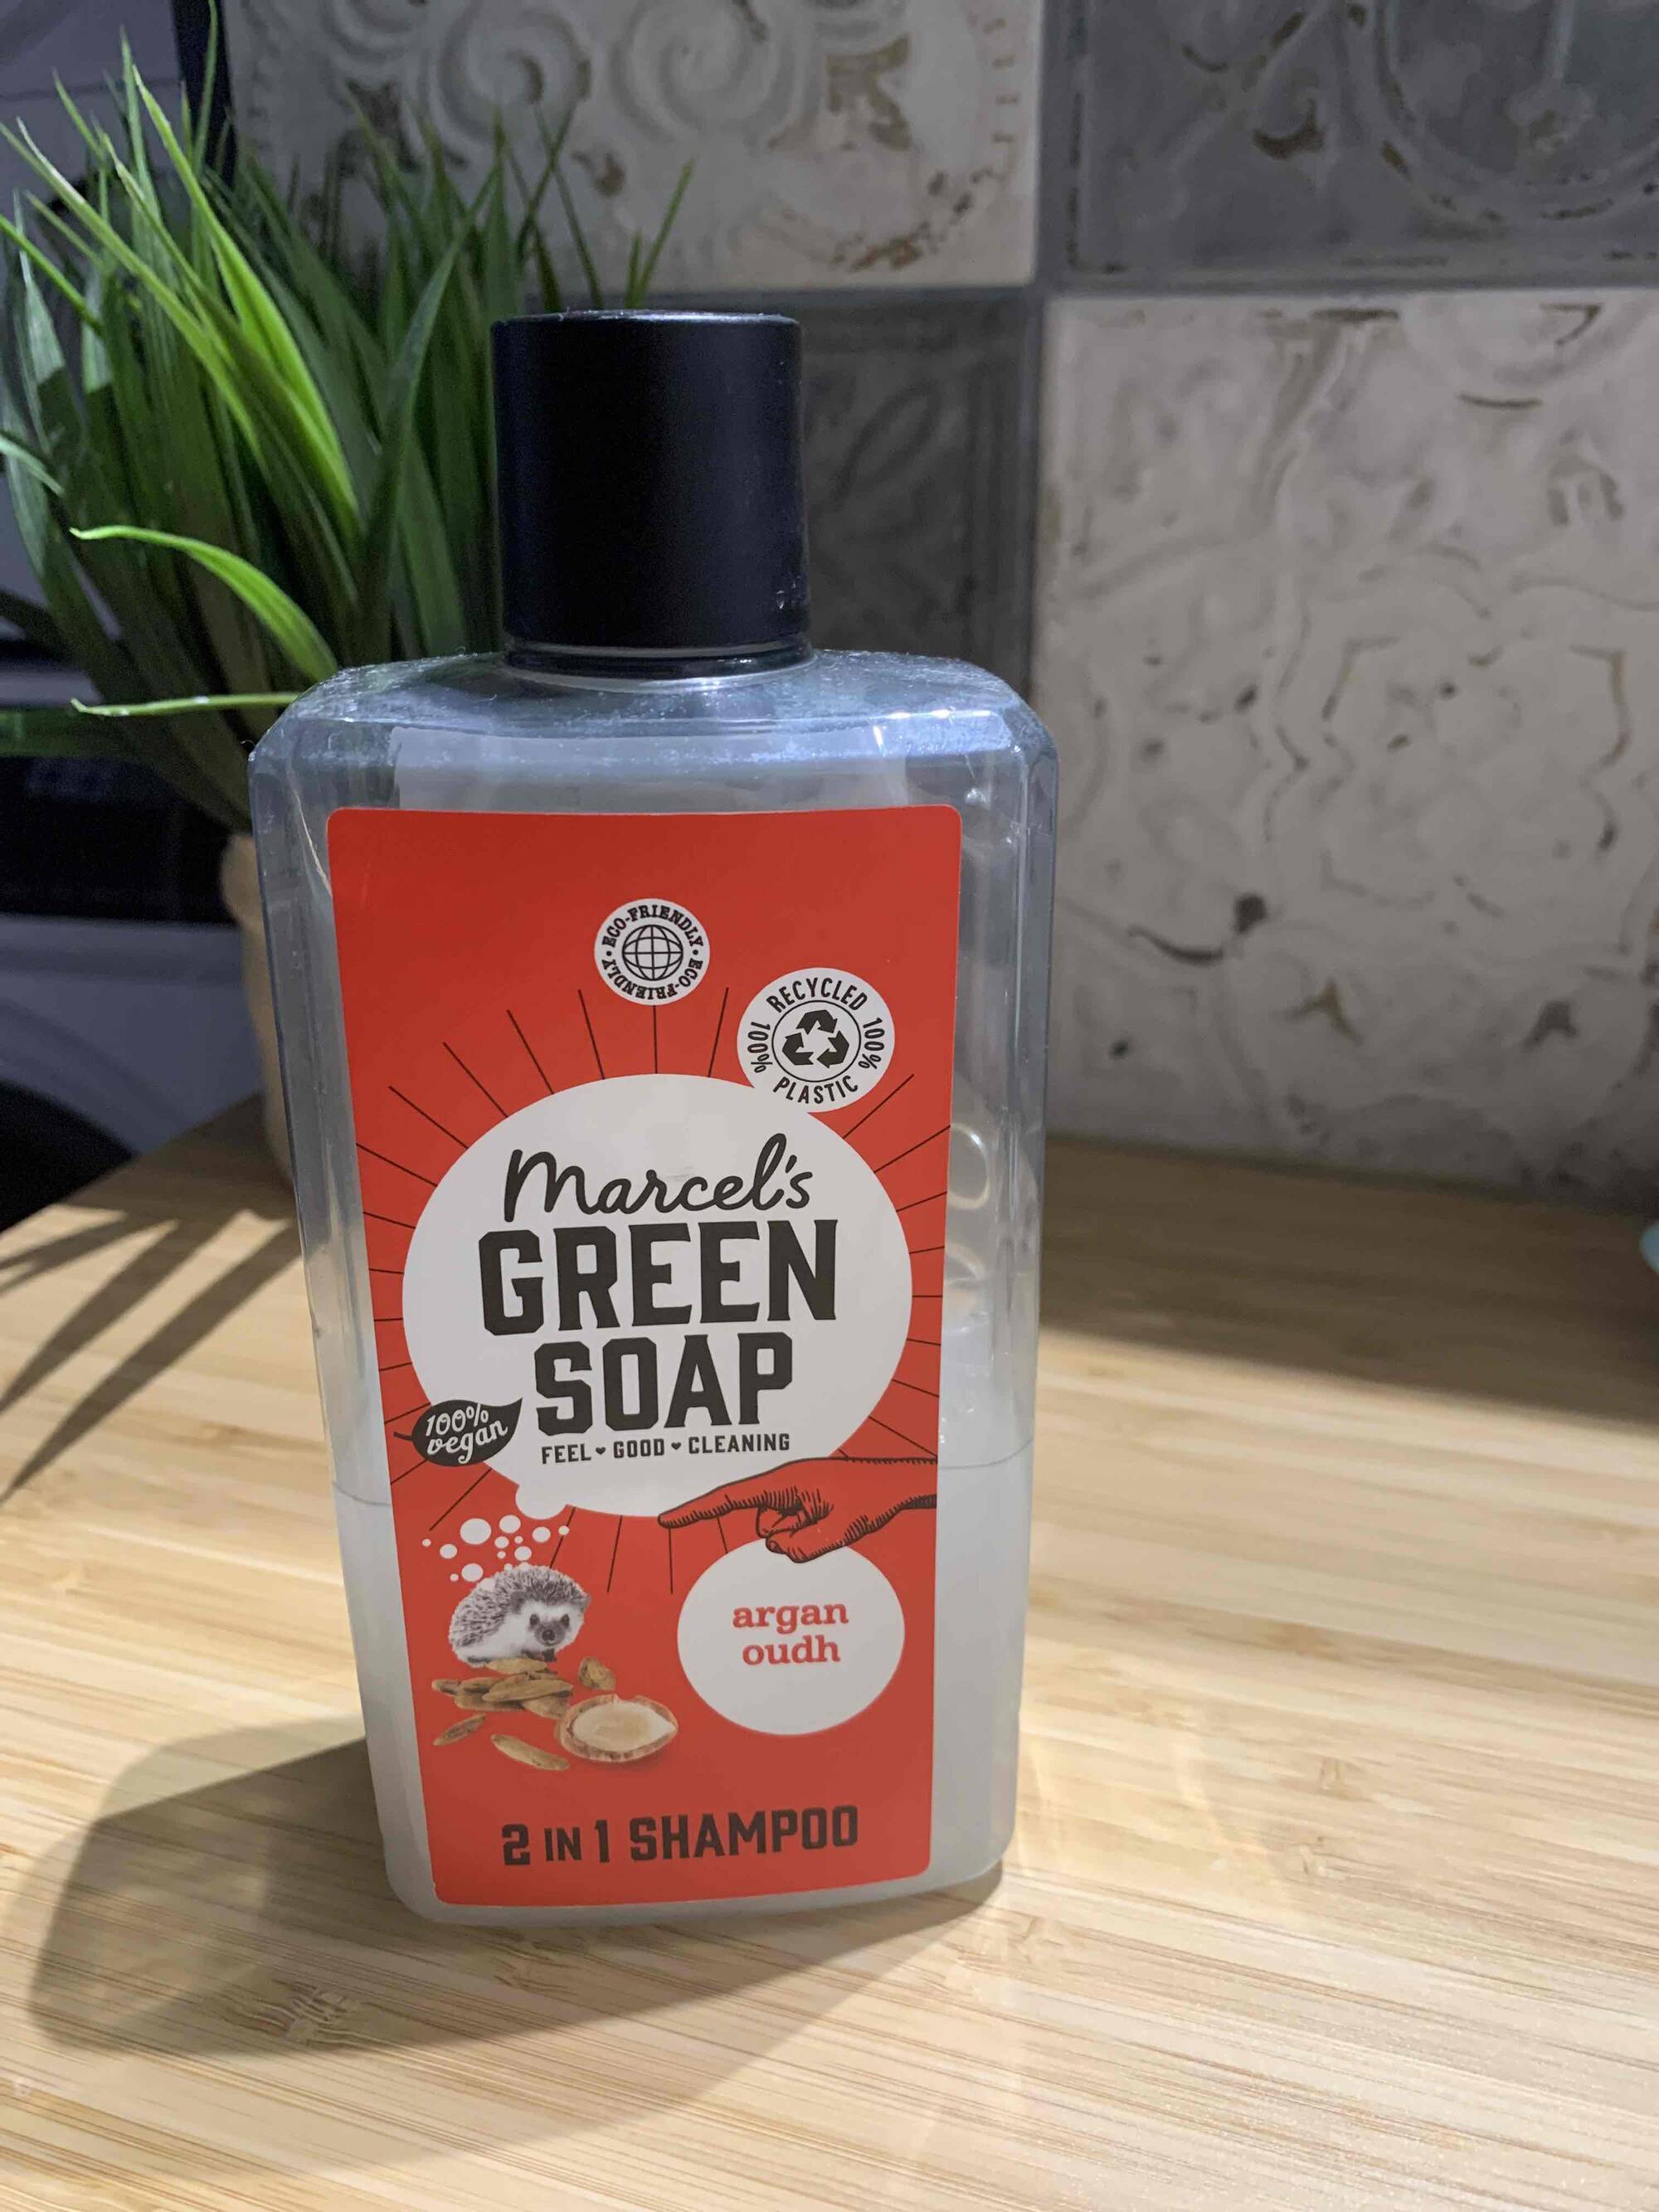 MARCEL'S GREEN SOAP - 2 in 1 shampoo argan oudh